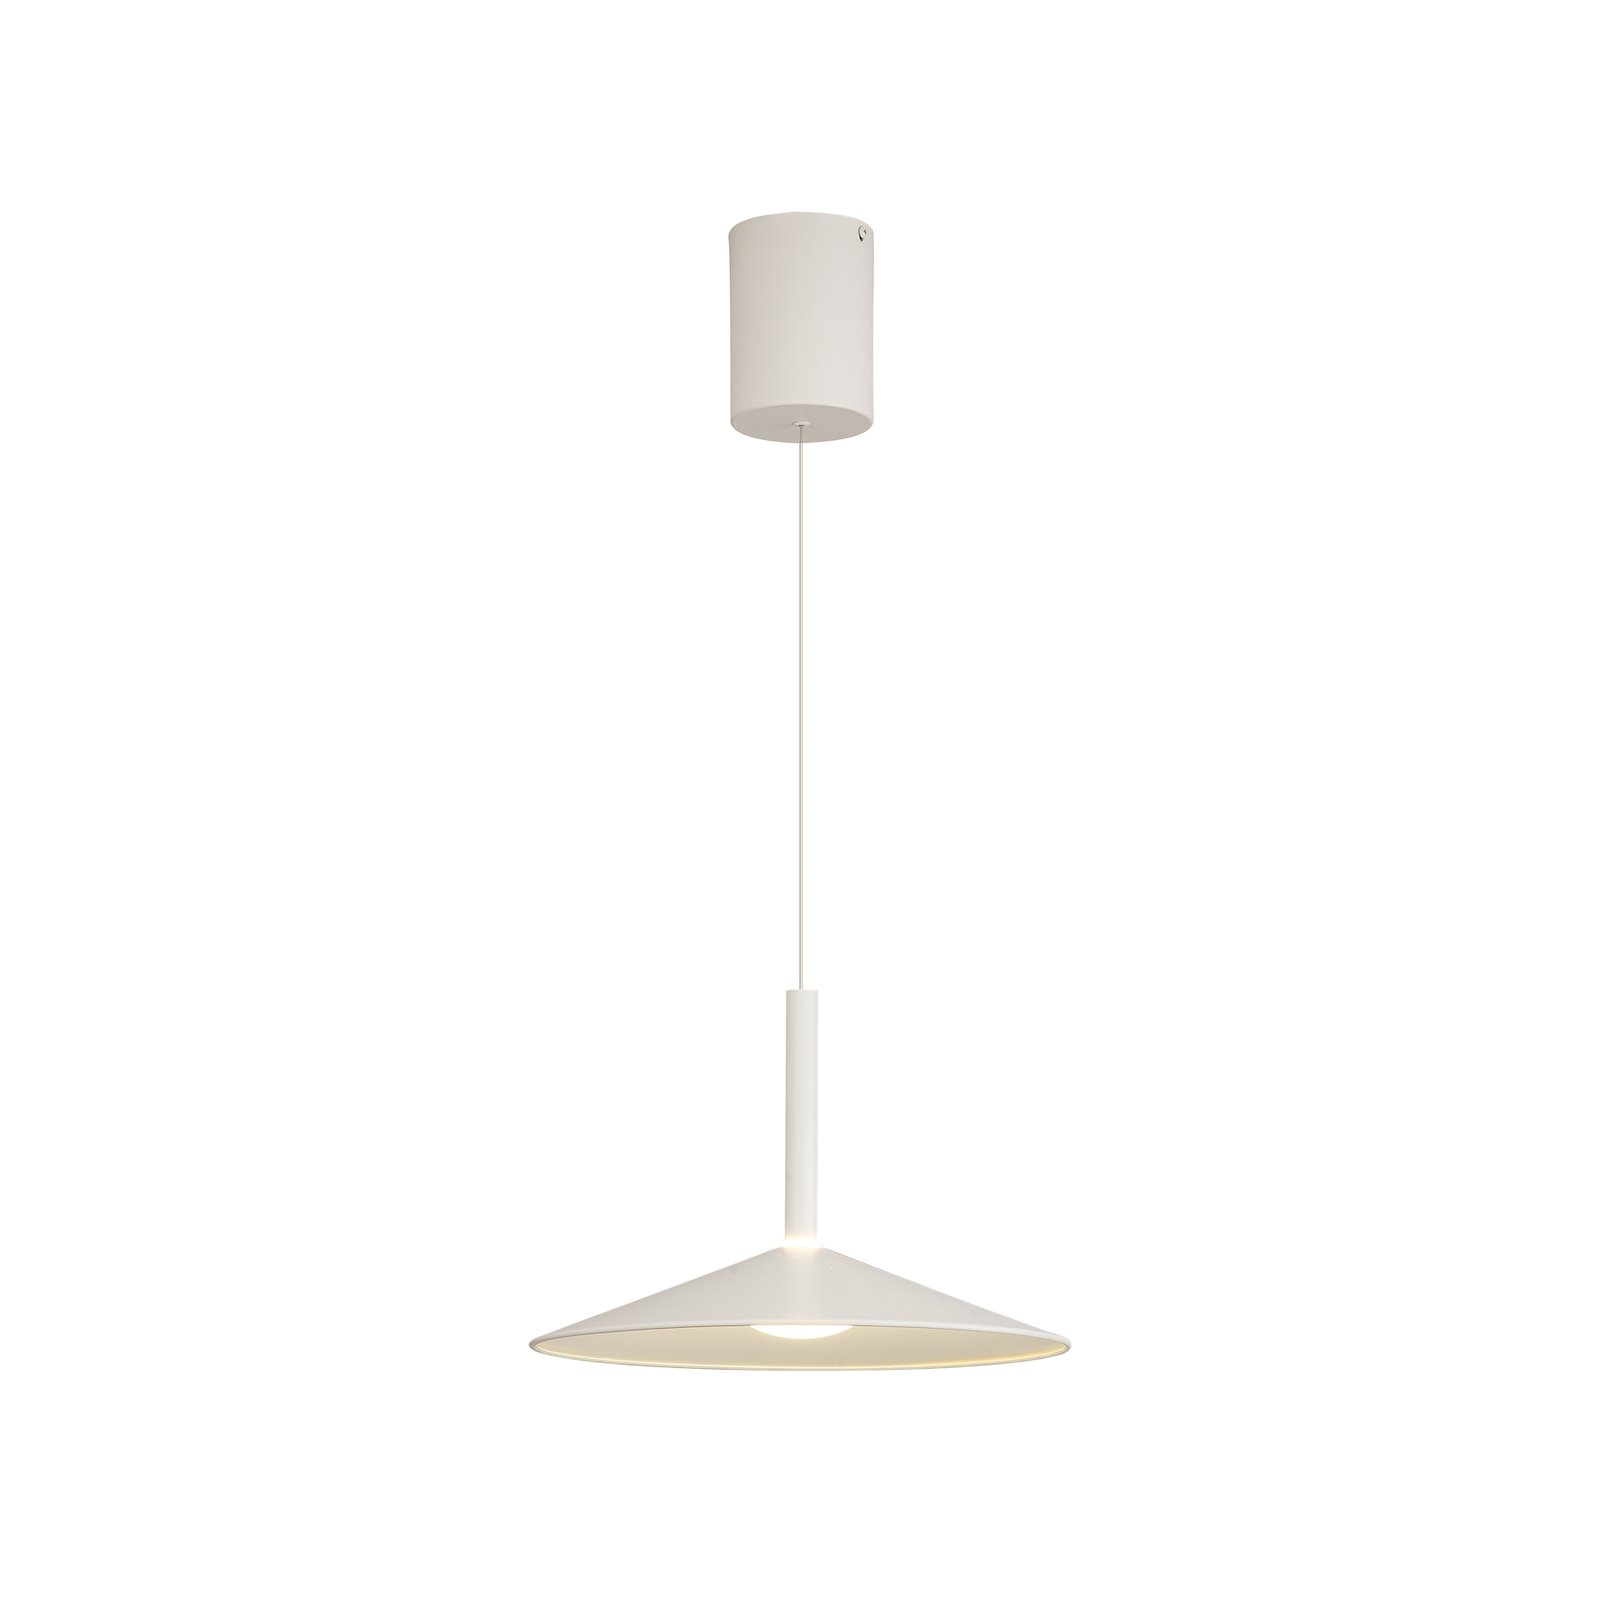 Suspension LED Calice, blanc, Ø 32 cm, réglable en hauteur